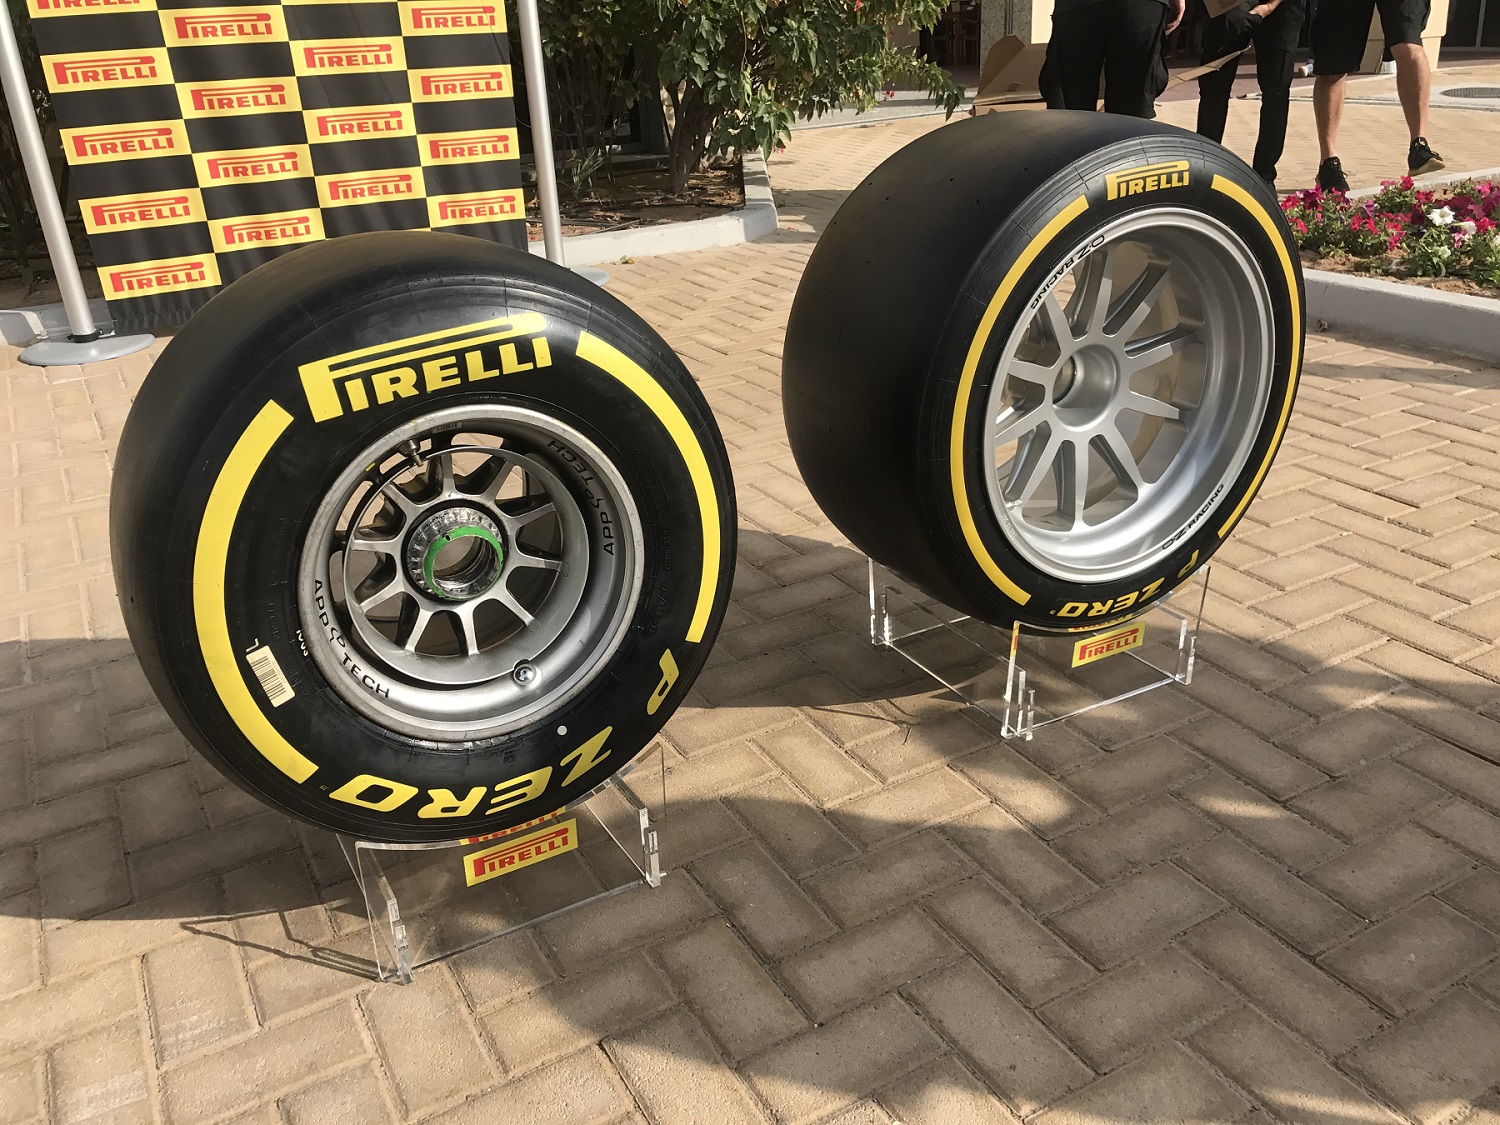 Pirelli expone sus neumáticos de 18 pulgadas en Mónaco 2018.